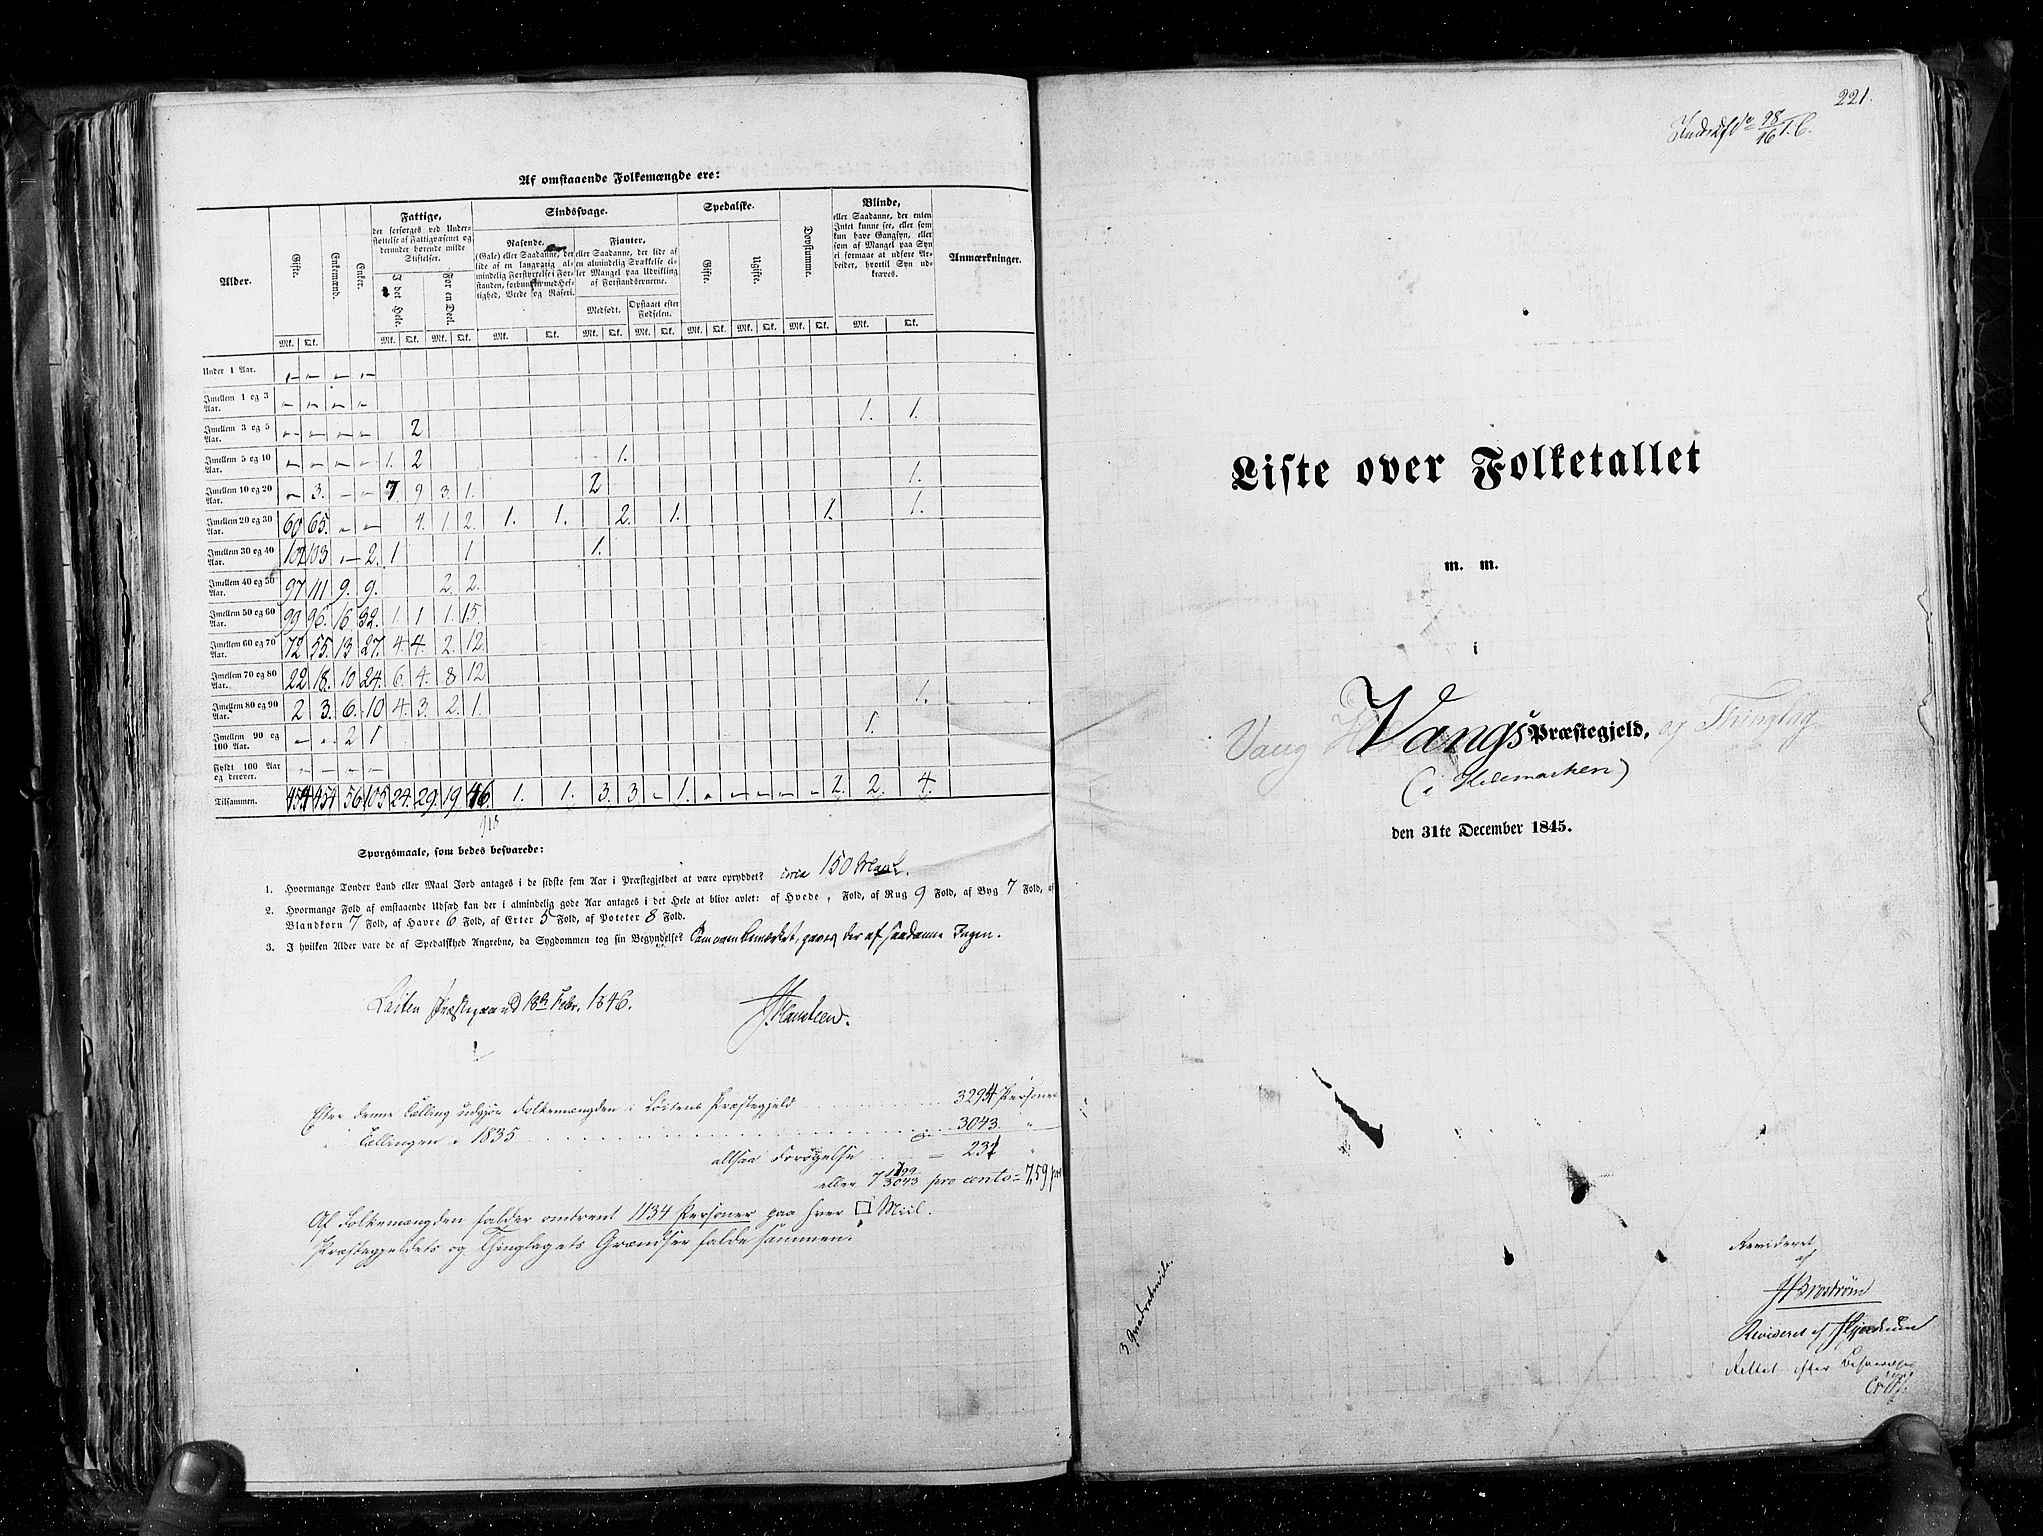 RA, Folketellingen 1845, bind 3: Hedemarken amt og Kristians amt, 1845, s. 221